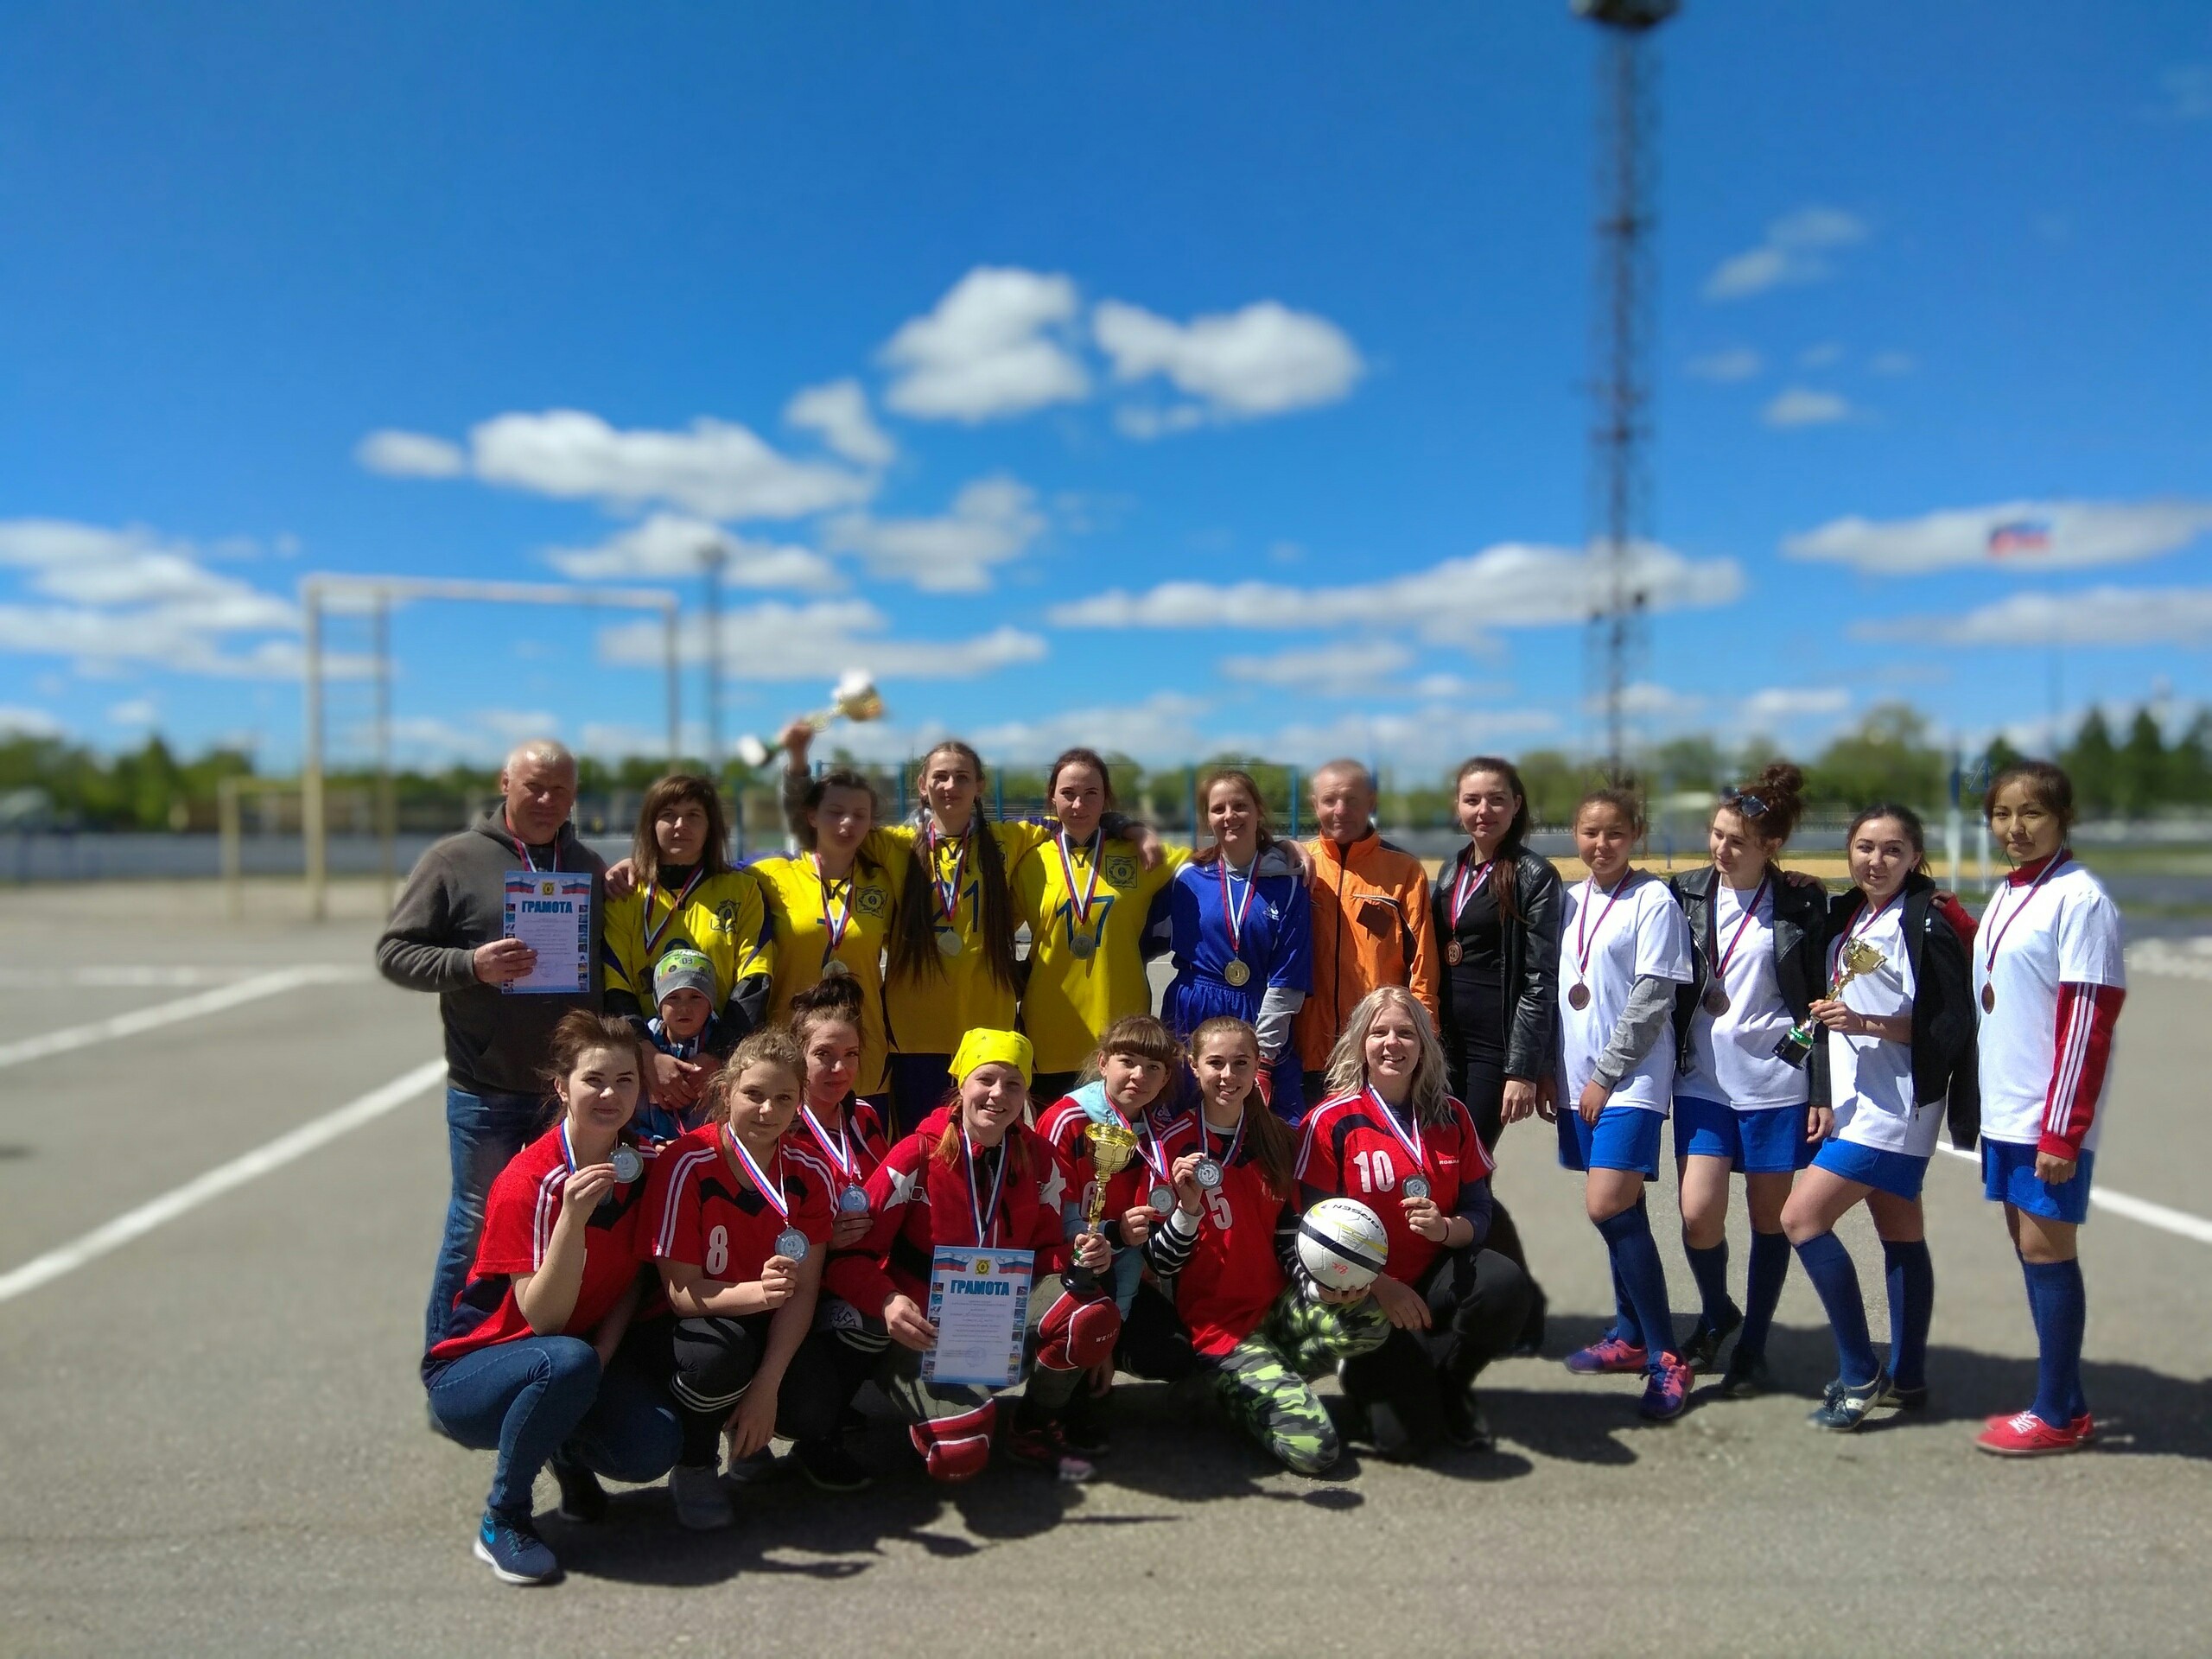 25 мая 2019 года на Спортивном Комплексе «Локомотив» проводились финальные соревнования по мини-футболу среди женских команд сельских поселений в зачет 13 спартакиады Карталинского района. В соревнованиях приняло участие 9 команд.